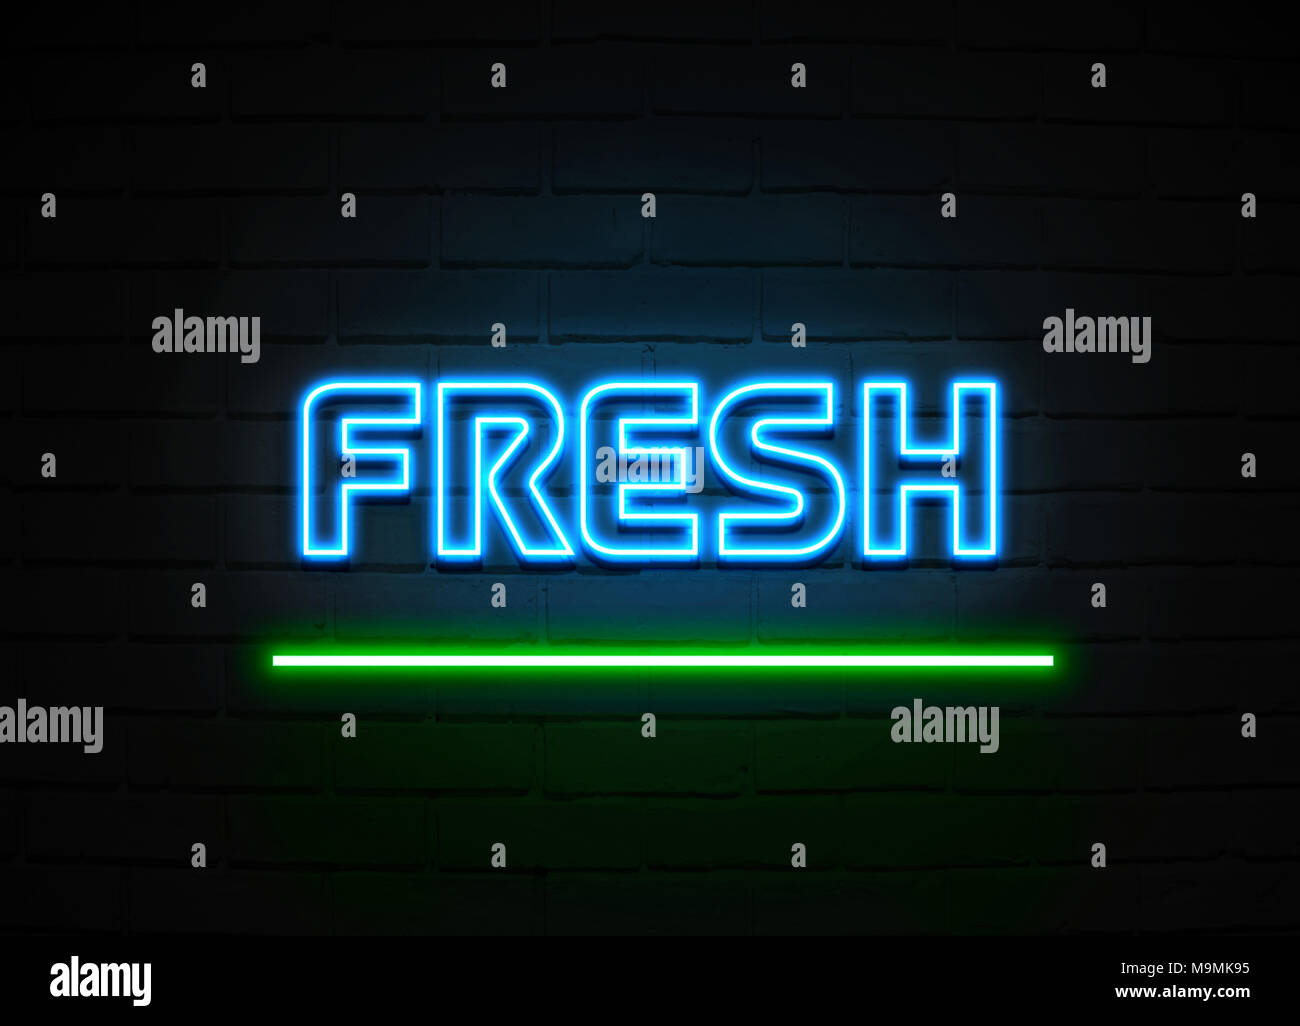 Frische Leuchtreklame - glühende Leuchtreklame auf brickwall Wand - 3D-Royalty Free Stock Illustration dargestellt. Stockfoto